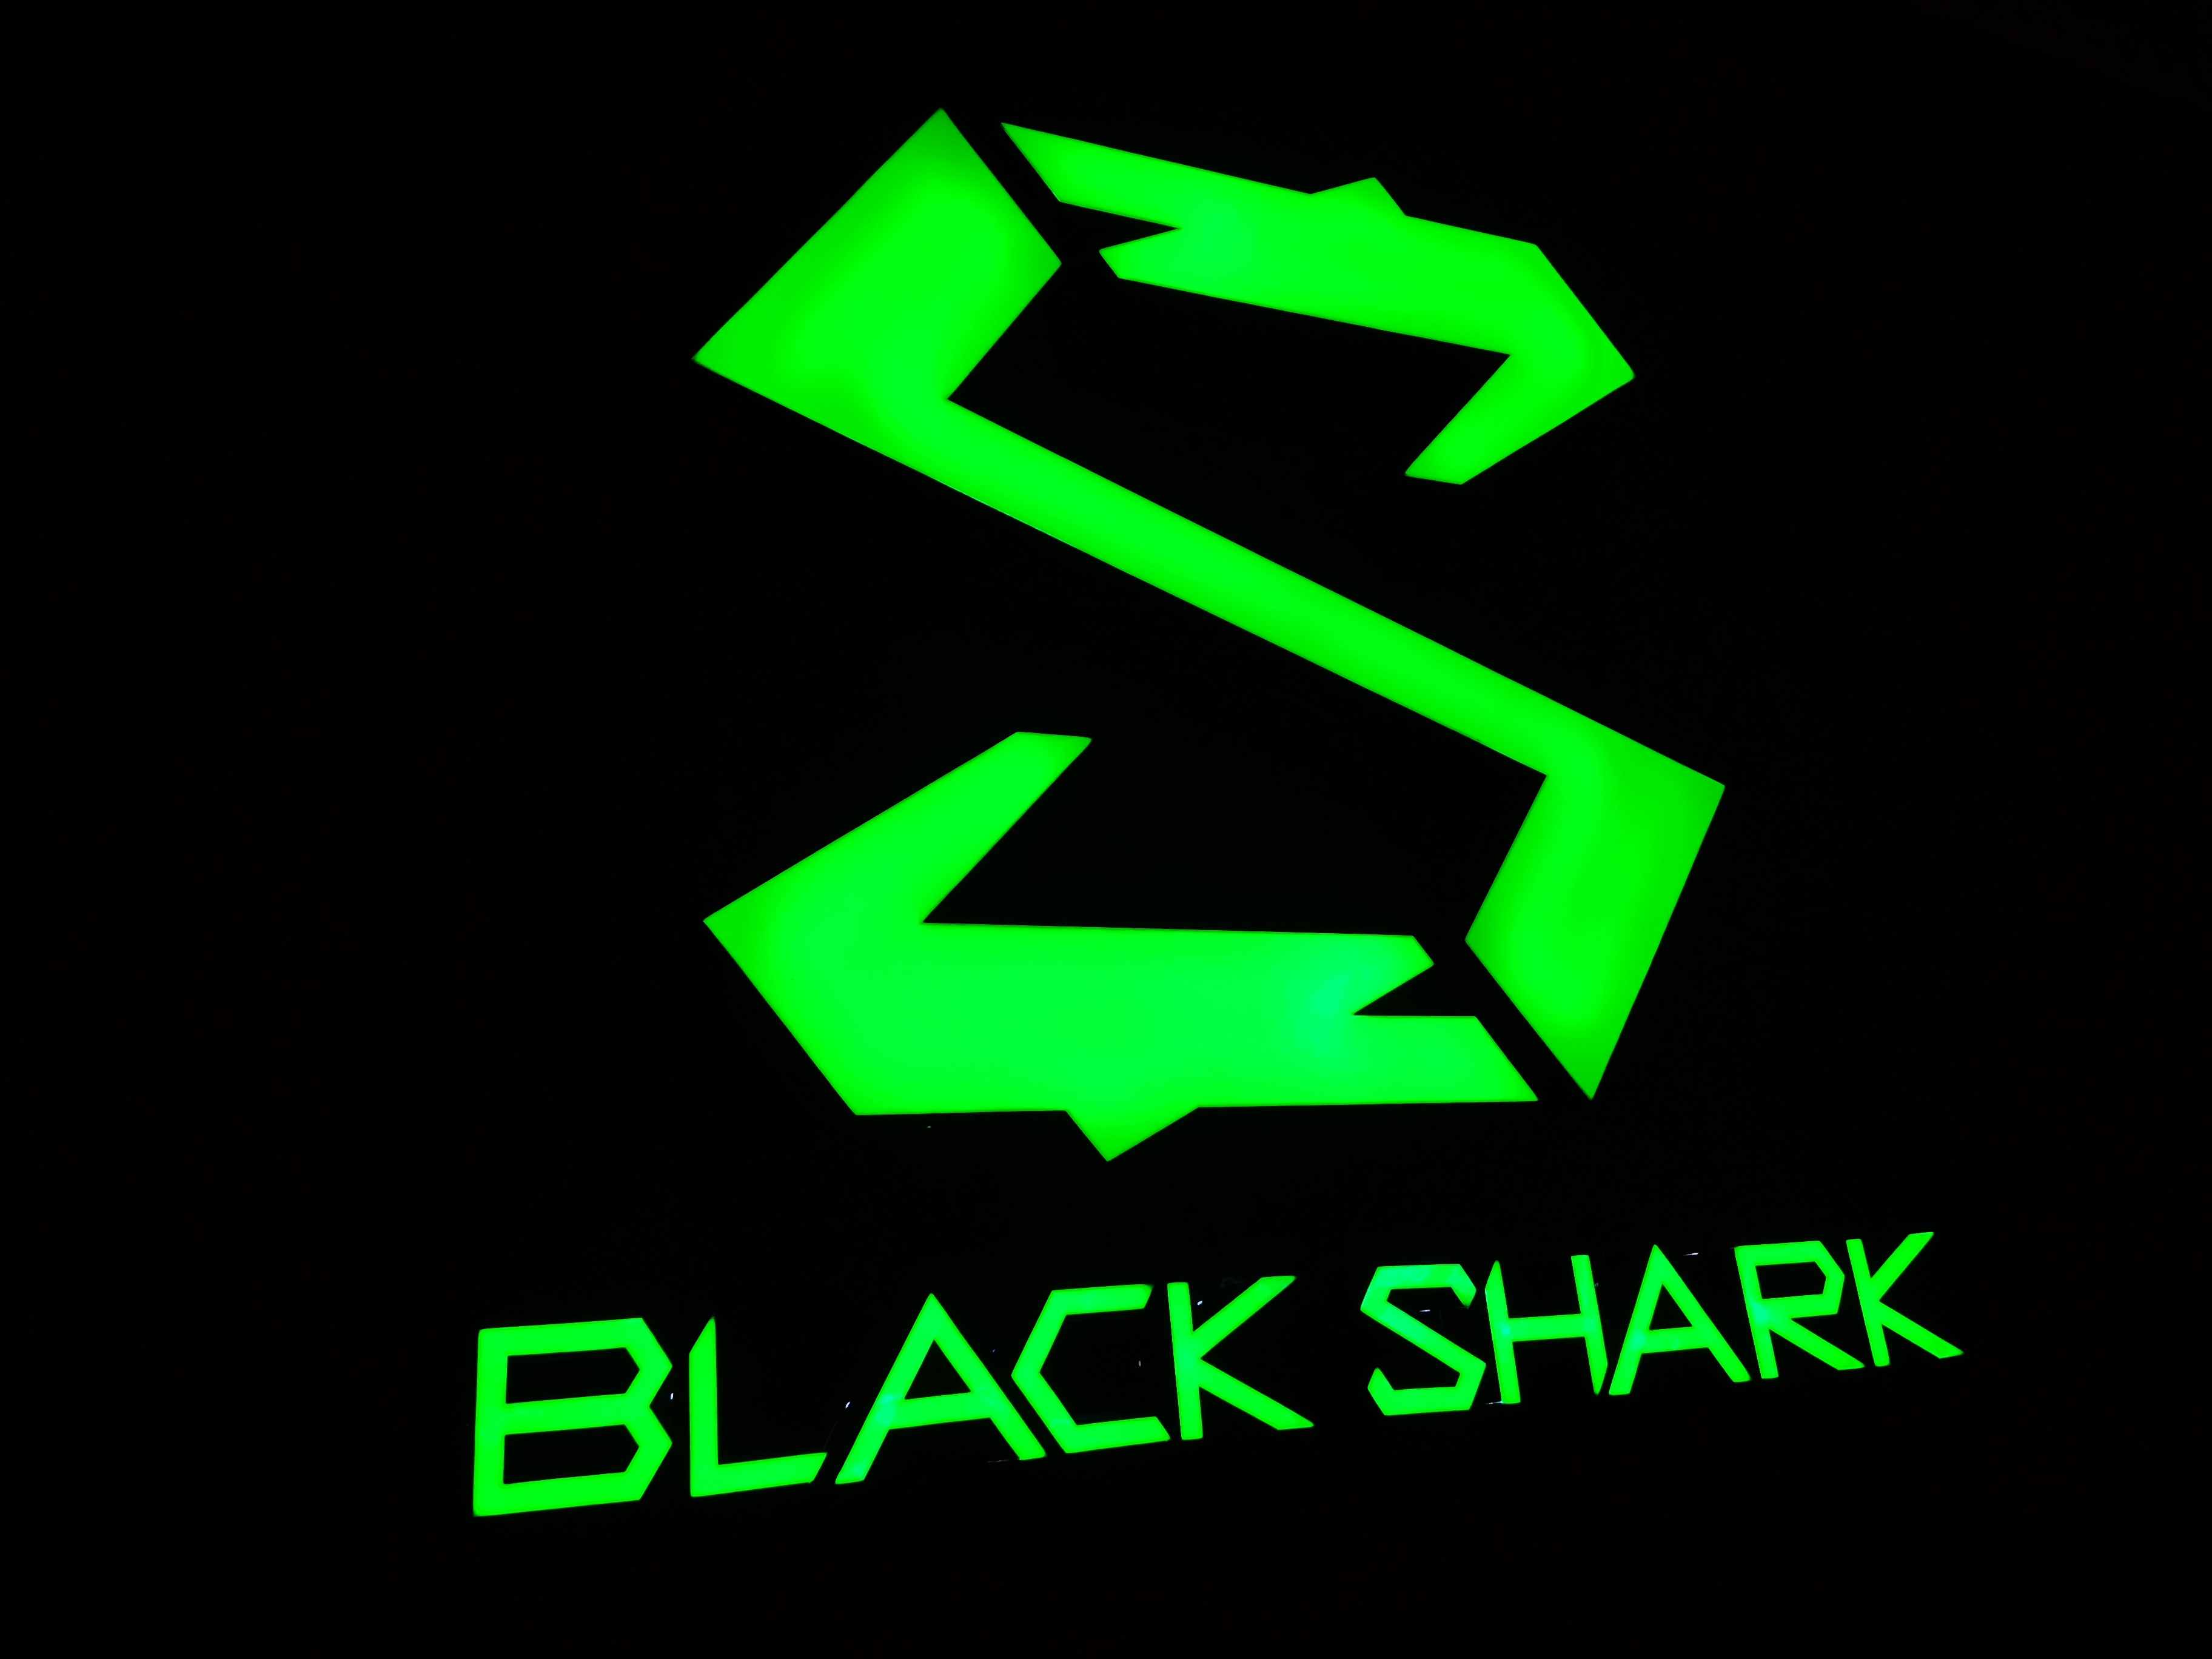 腾讯收购计划搁浅 黑鲨手机半数岗位被裁撤